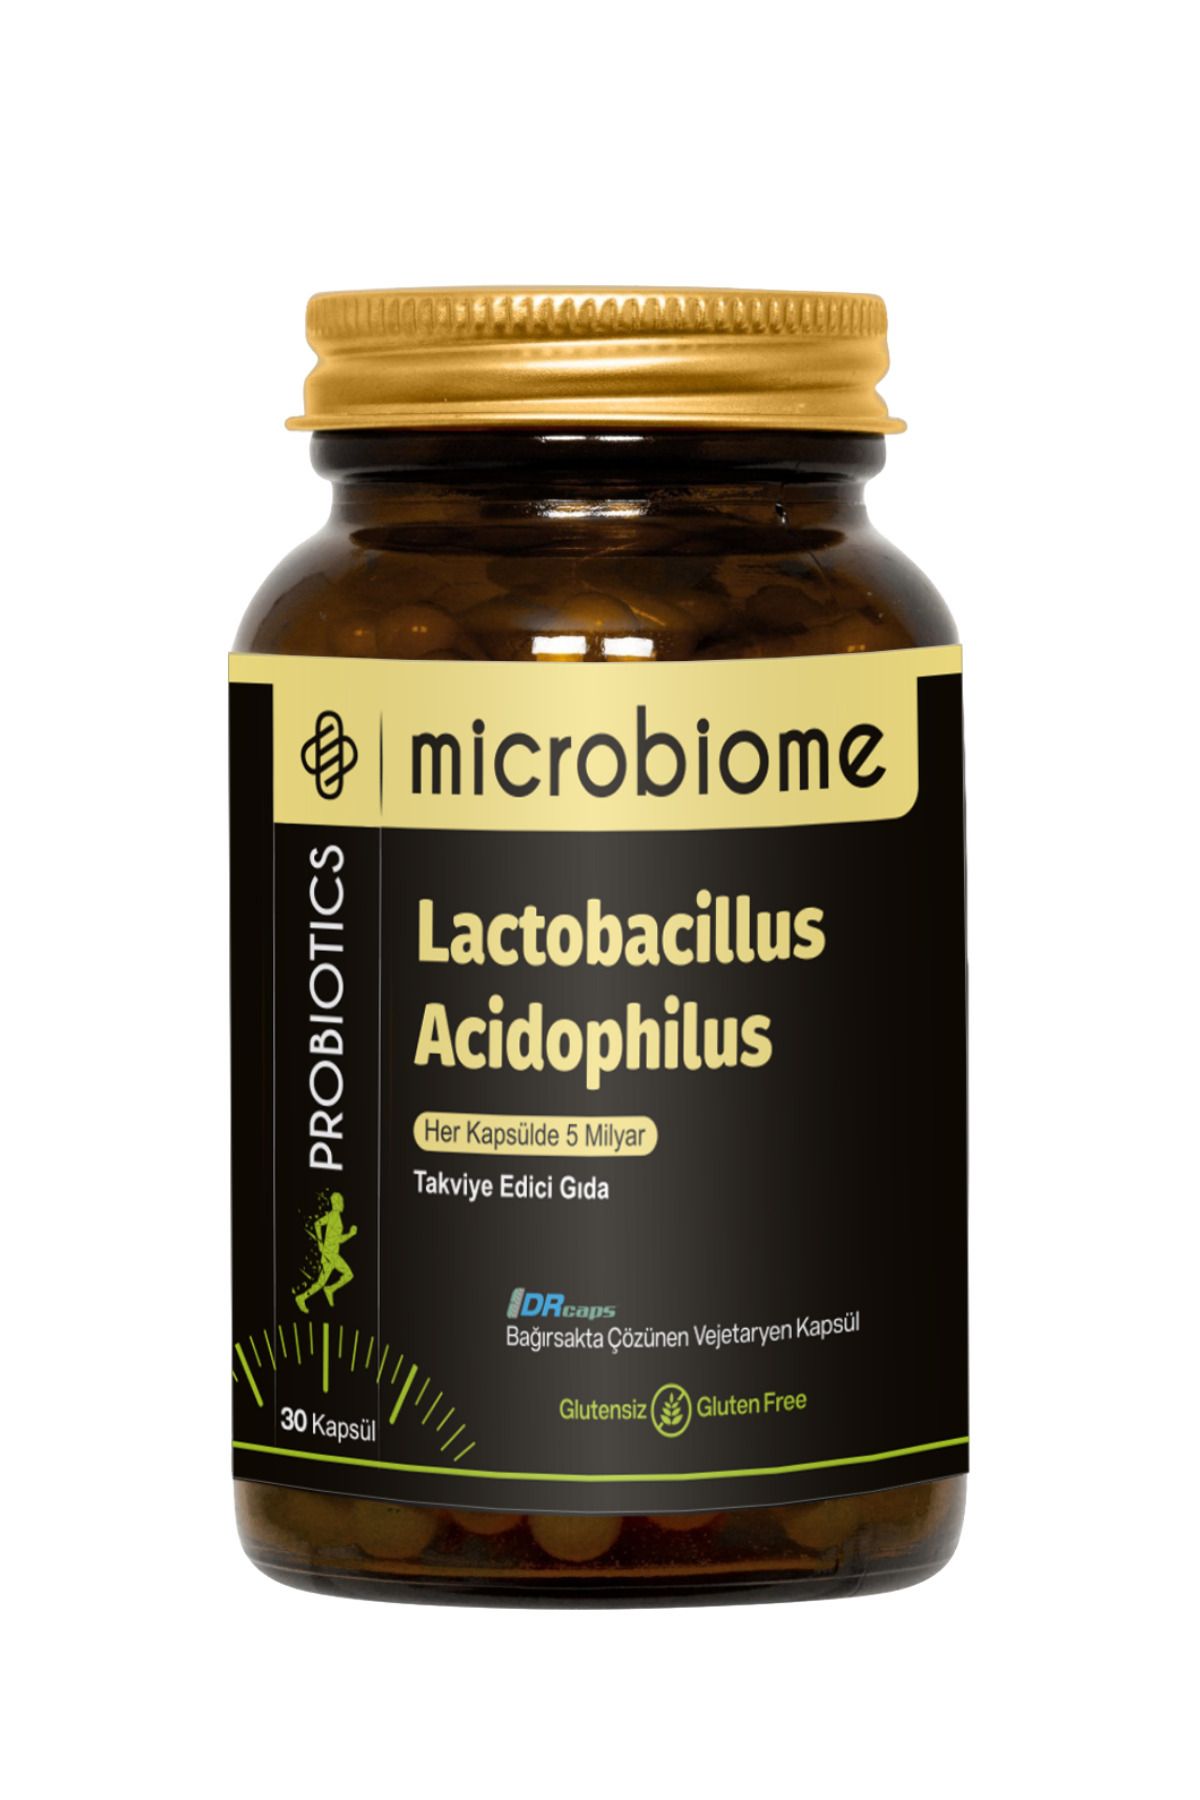 Microbiome Lactobacillus Acidophilus 30 Kapsül Probiyotik Probiotics